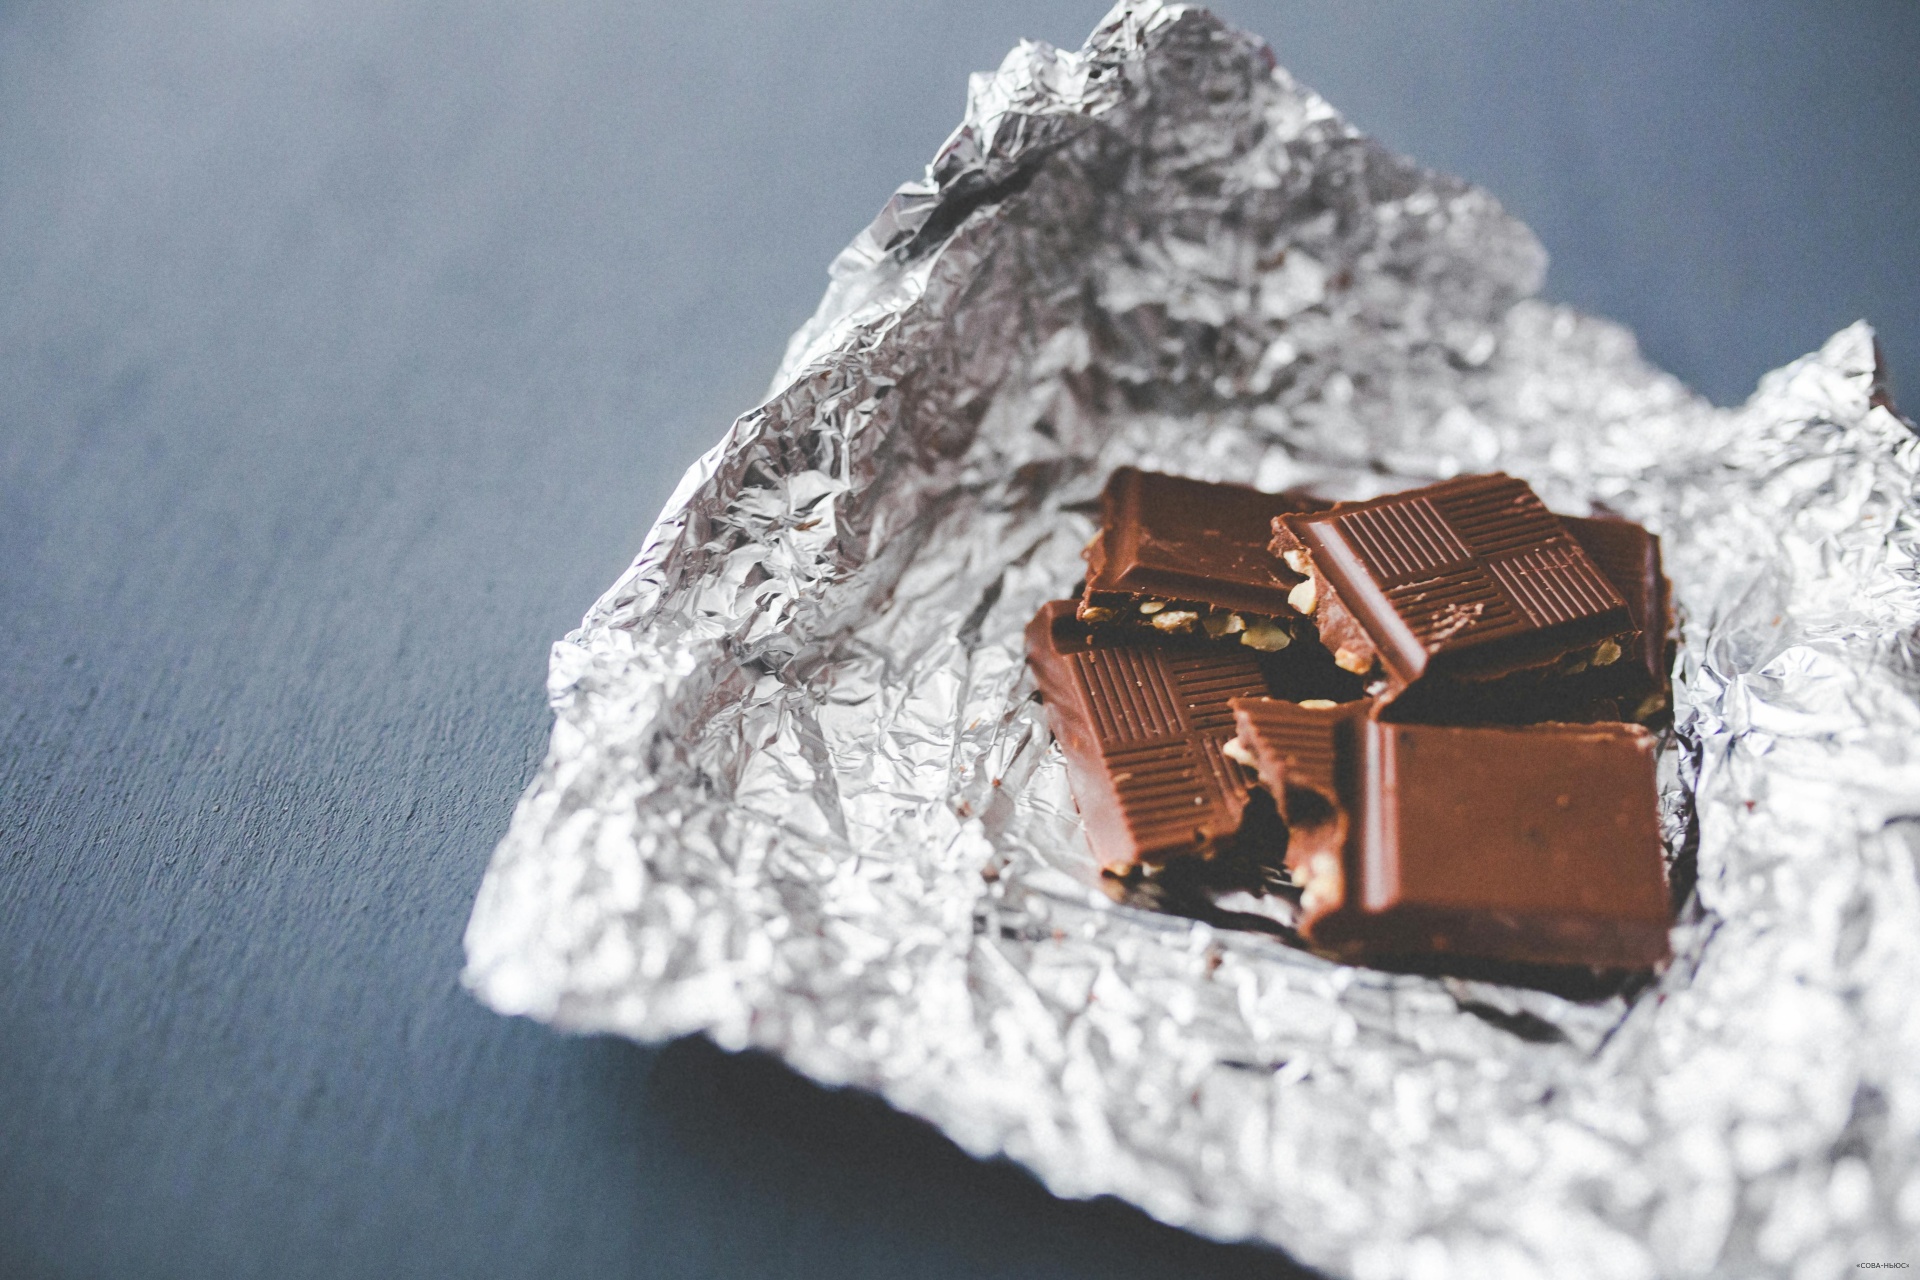 Поставщики шоколадных изделий готовятся к повышению цен на 10–20%